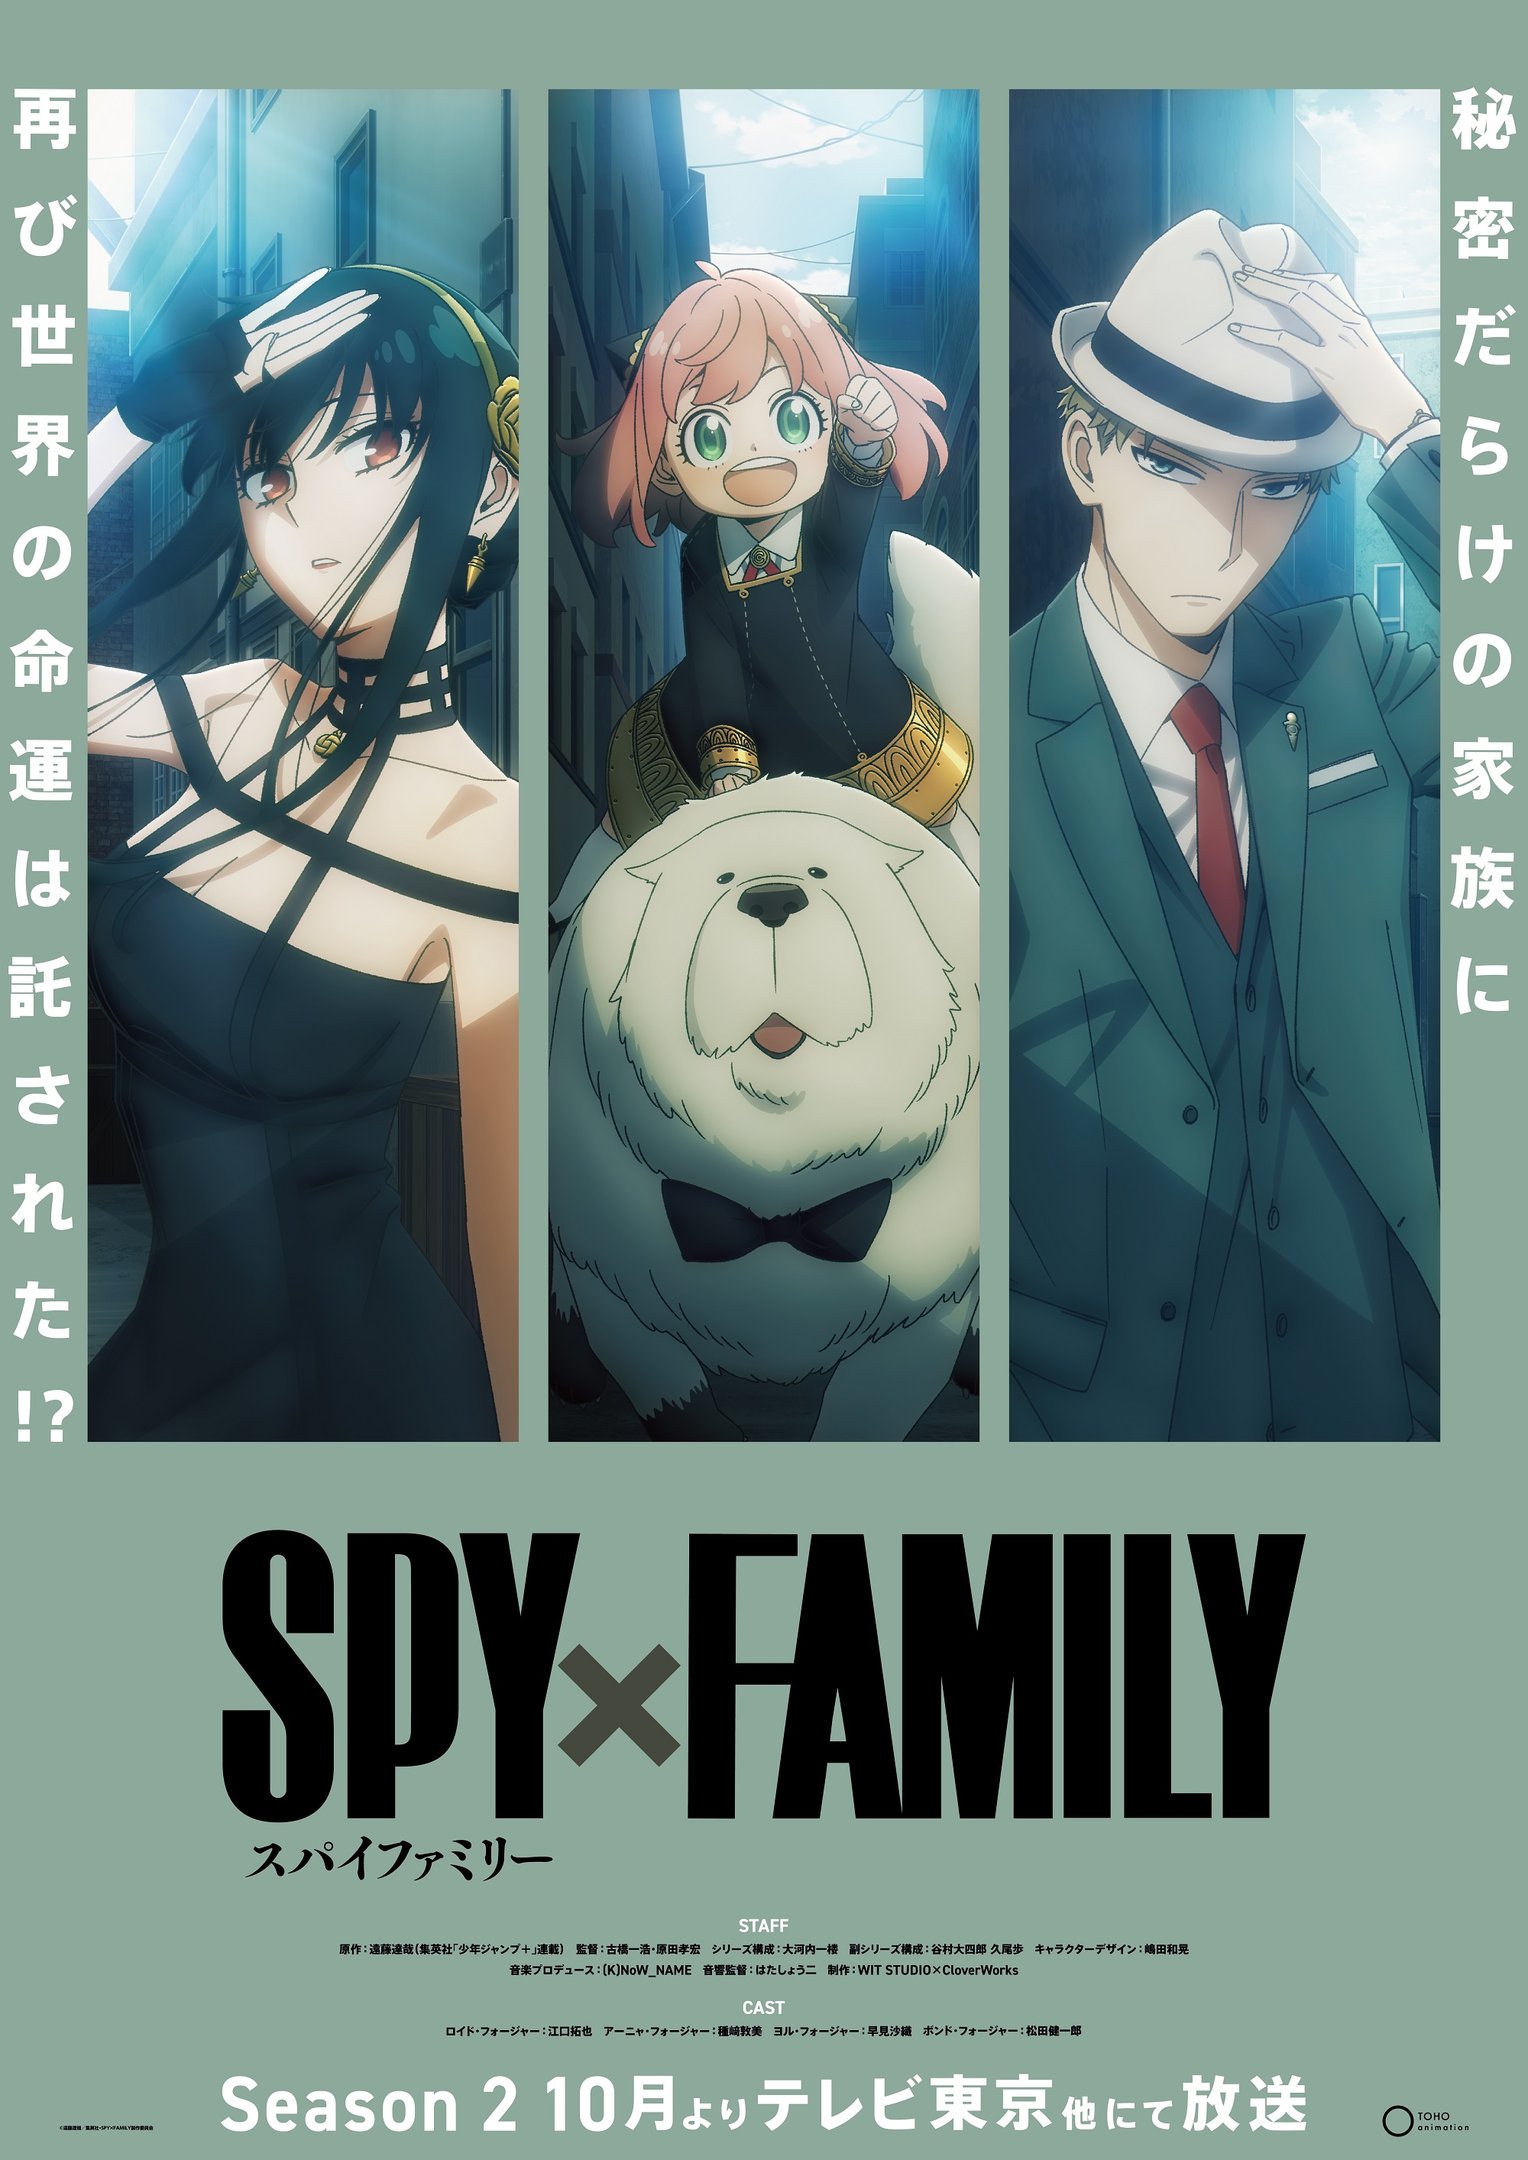 SPY X FAMILY 2 TEMPORADA DATA DE LANÇAMENTO!? (Spy x Family season